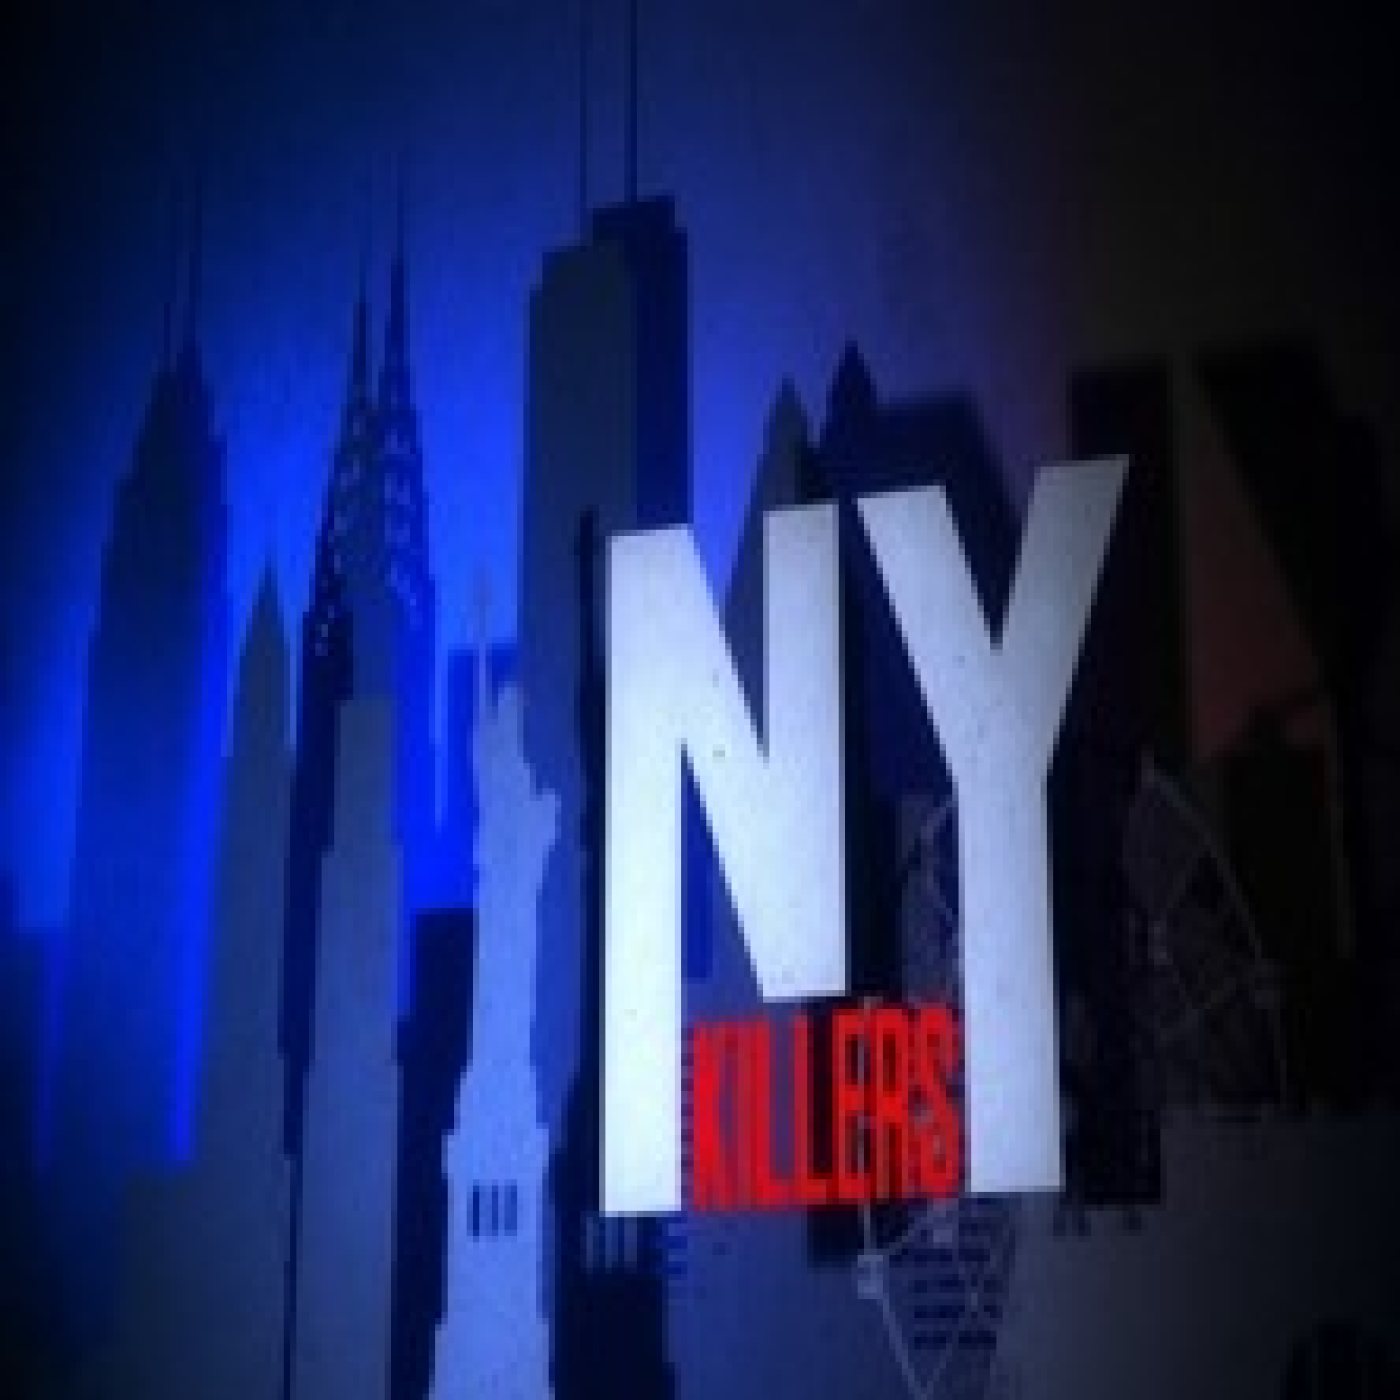 Cuarto Milenio: NY killers